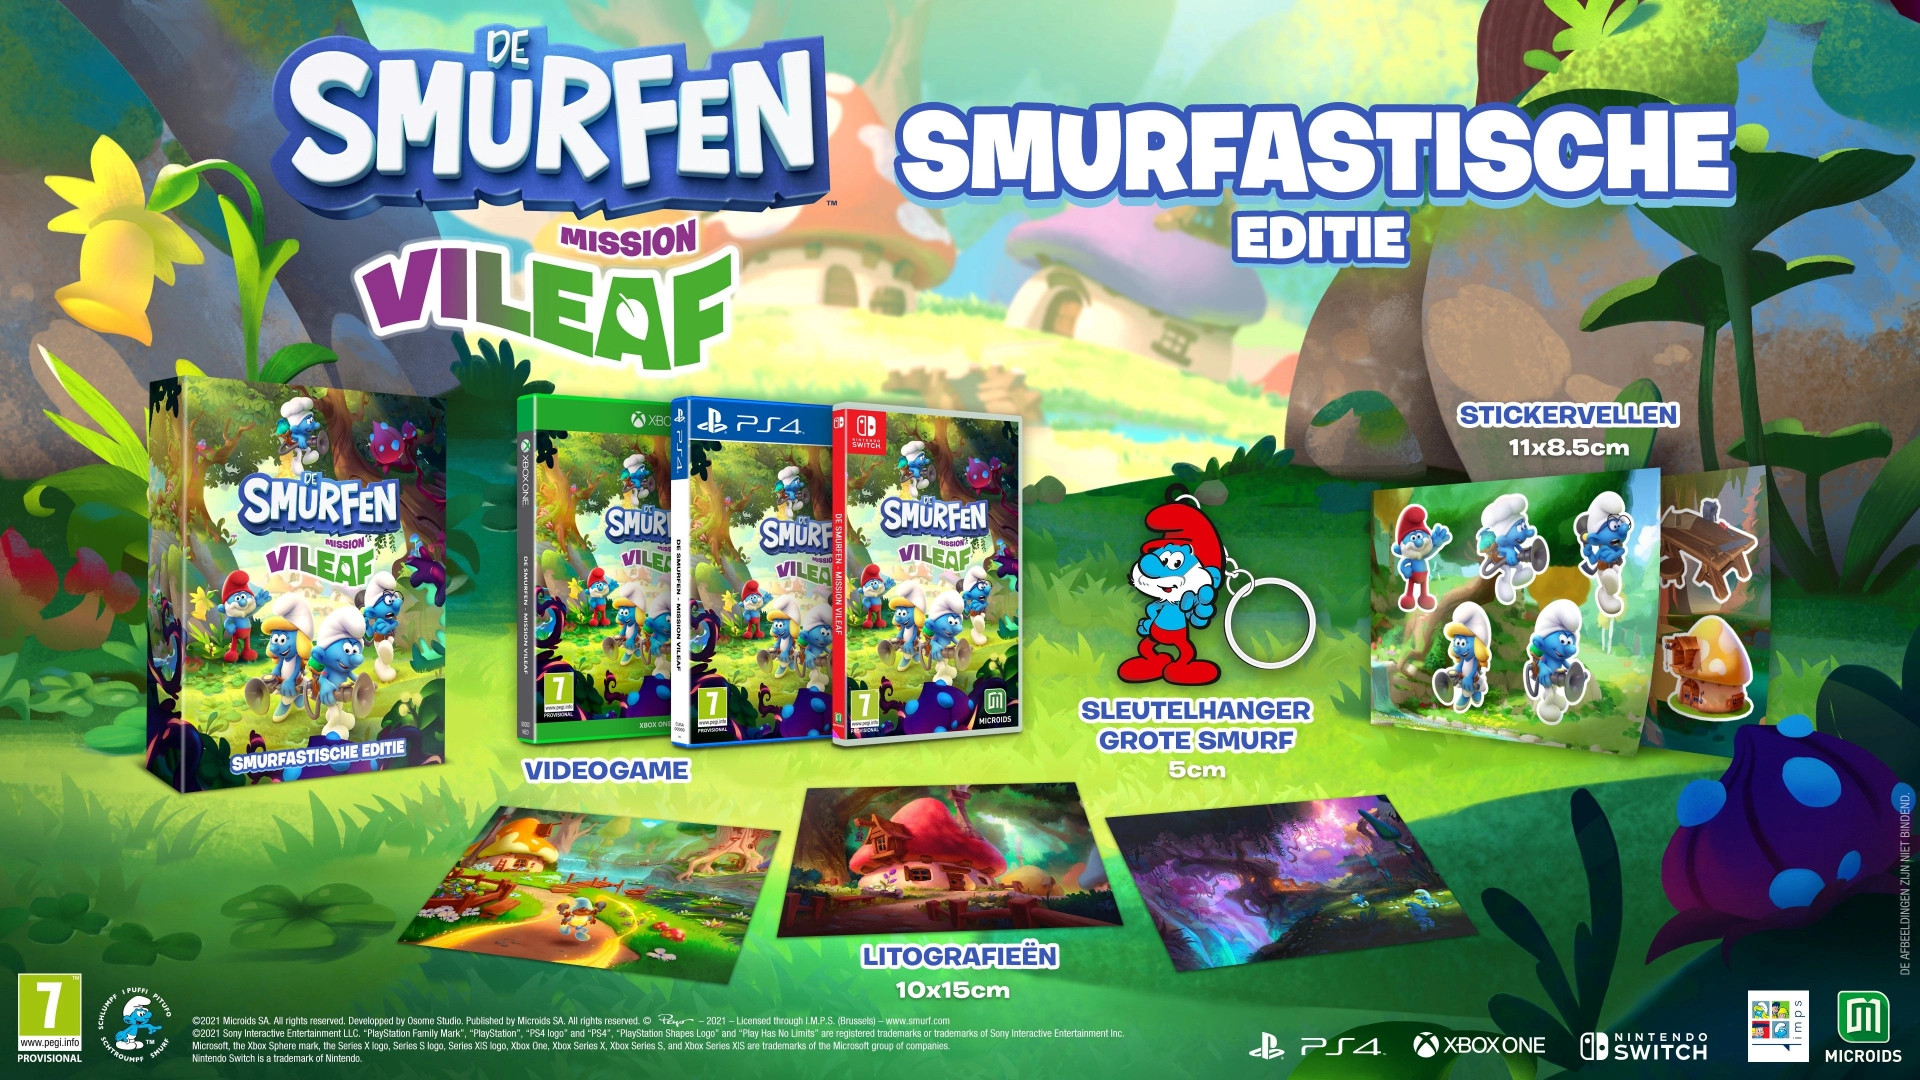 The Smurfs - Mission Vileaf Smurftastische Editie